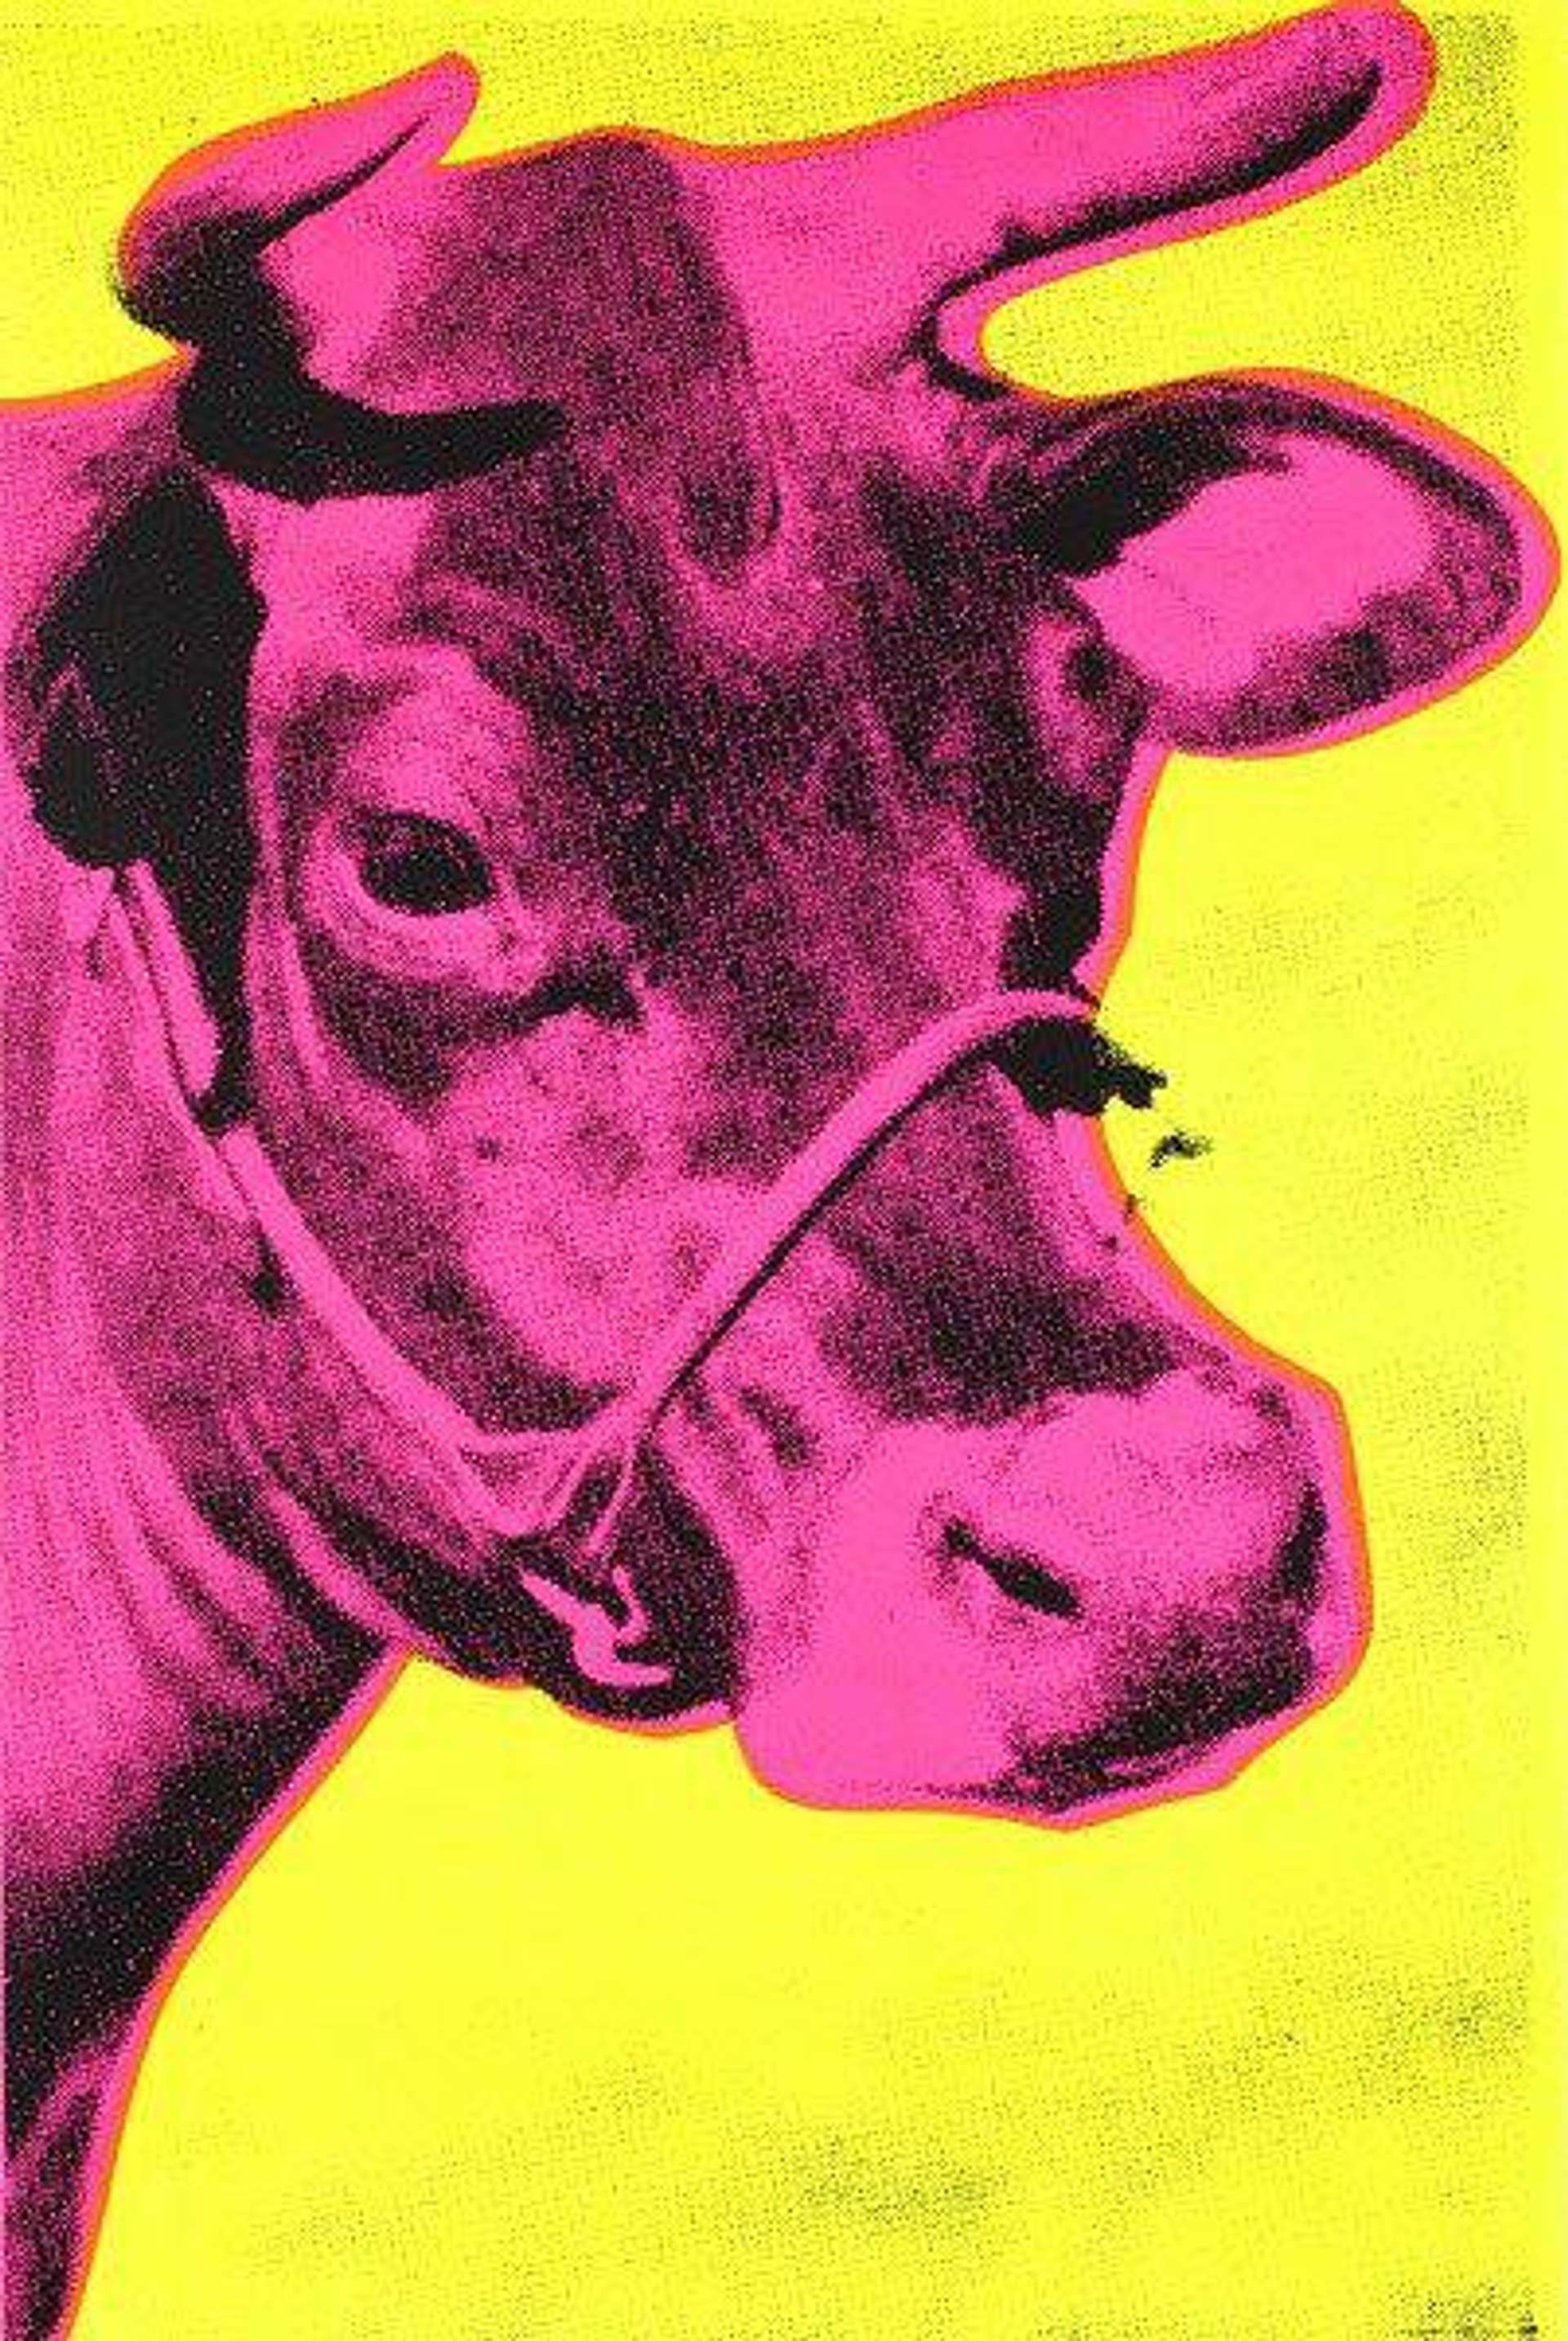 Cow (F. & S. II.11) by Andy Warhol - MyArtBroker